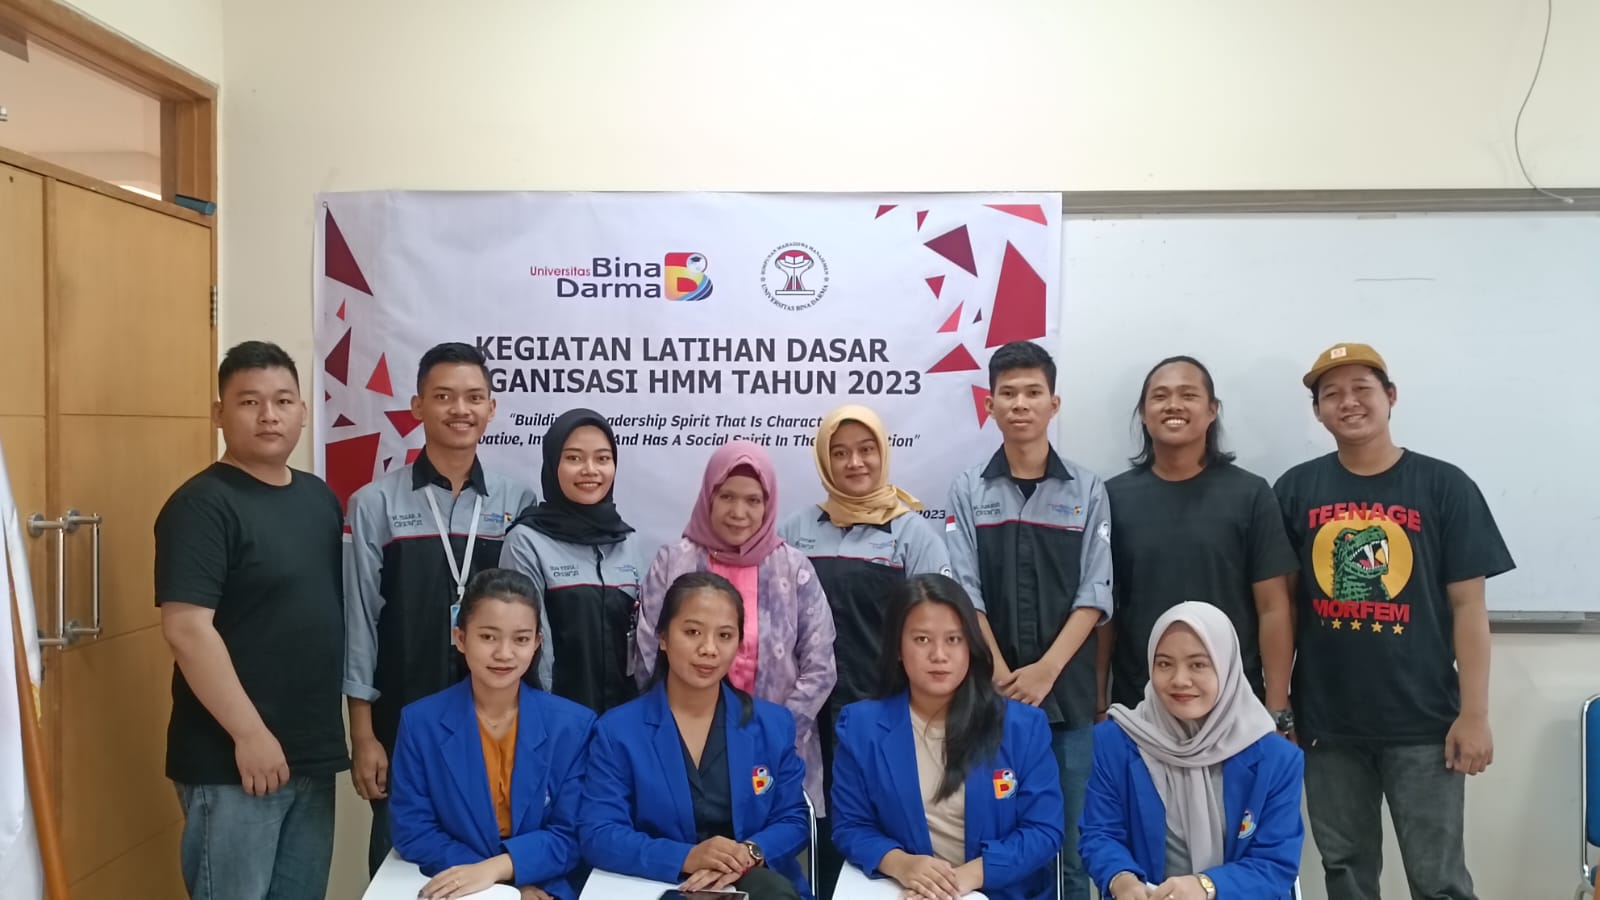 HMM Universitas Bina Darma Palembang Gelar Latihan Dasar Organisasi